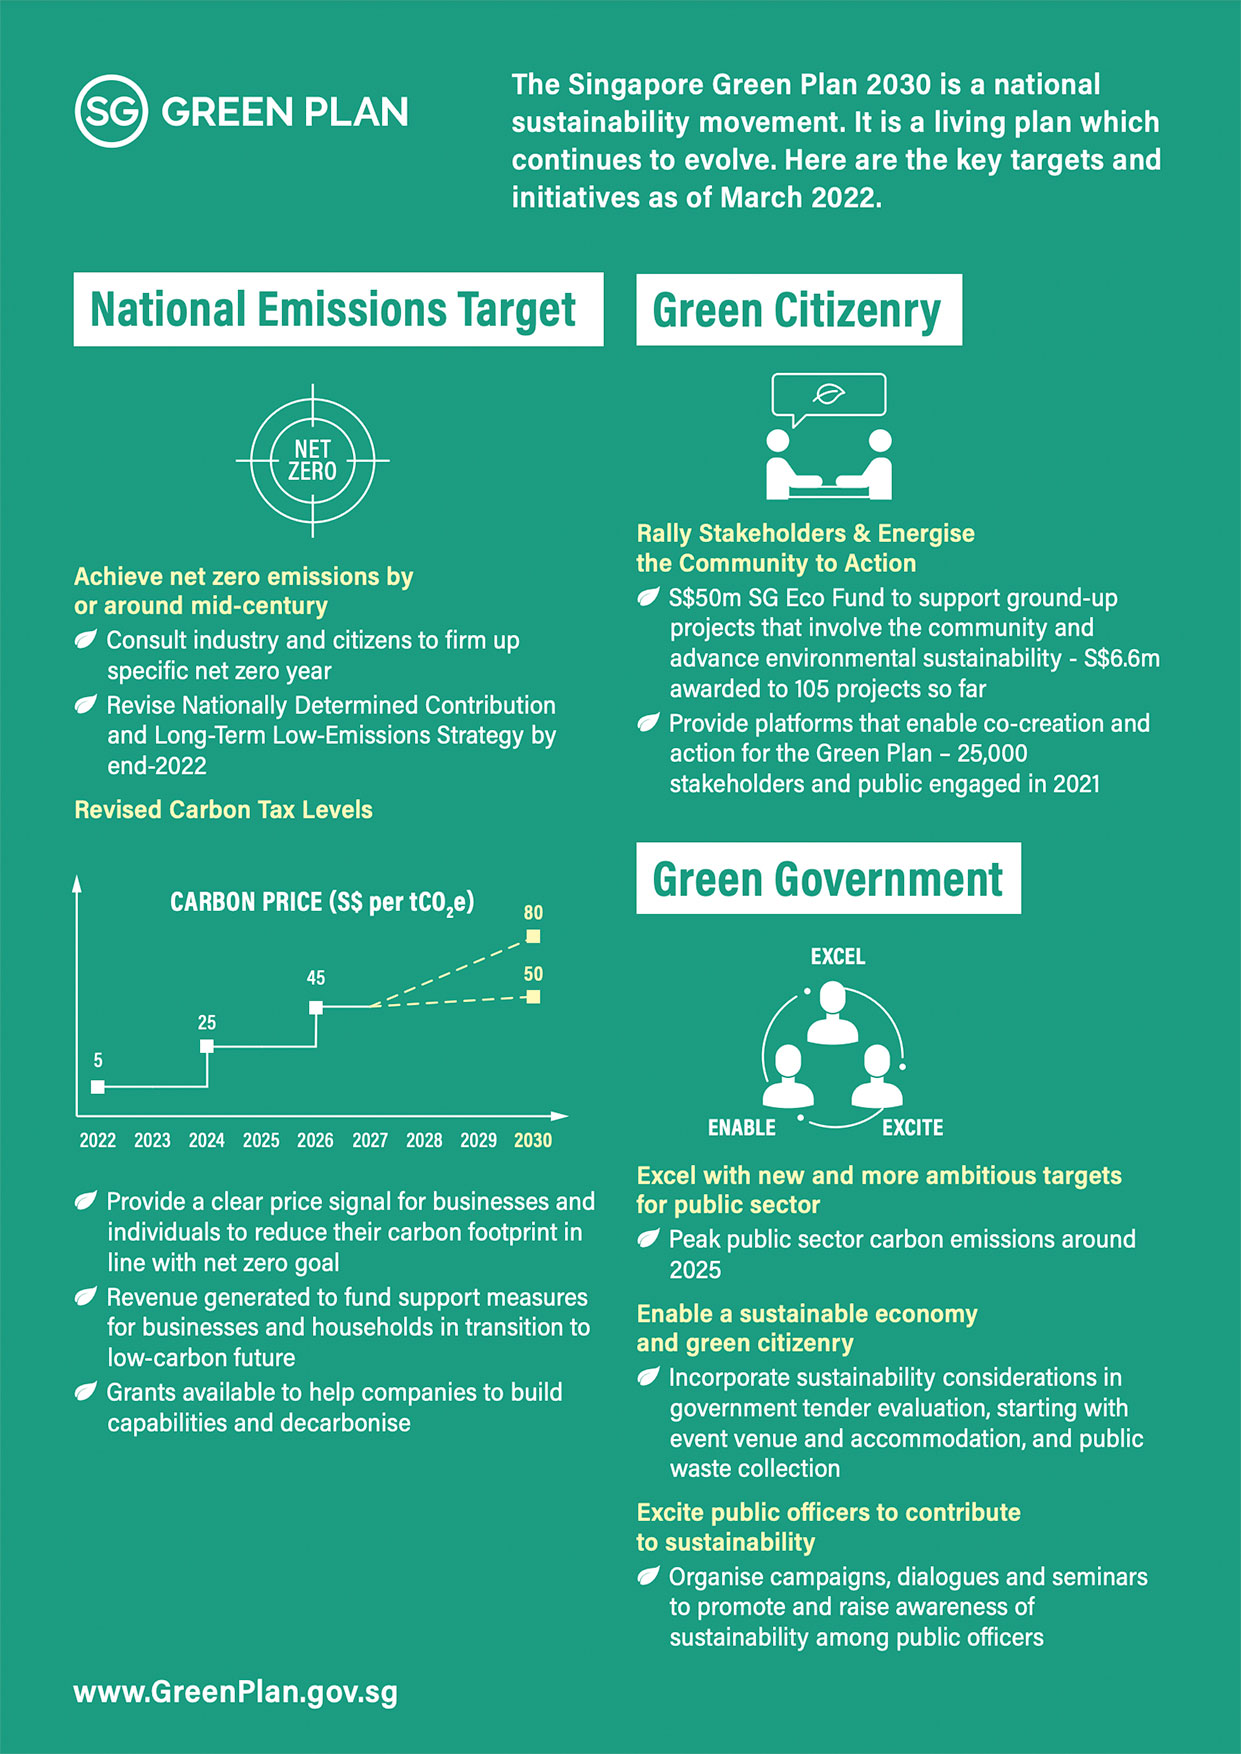 COS 2022 Singapore Green Plan 2030 Image 1